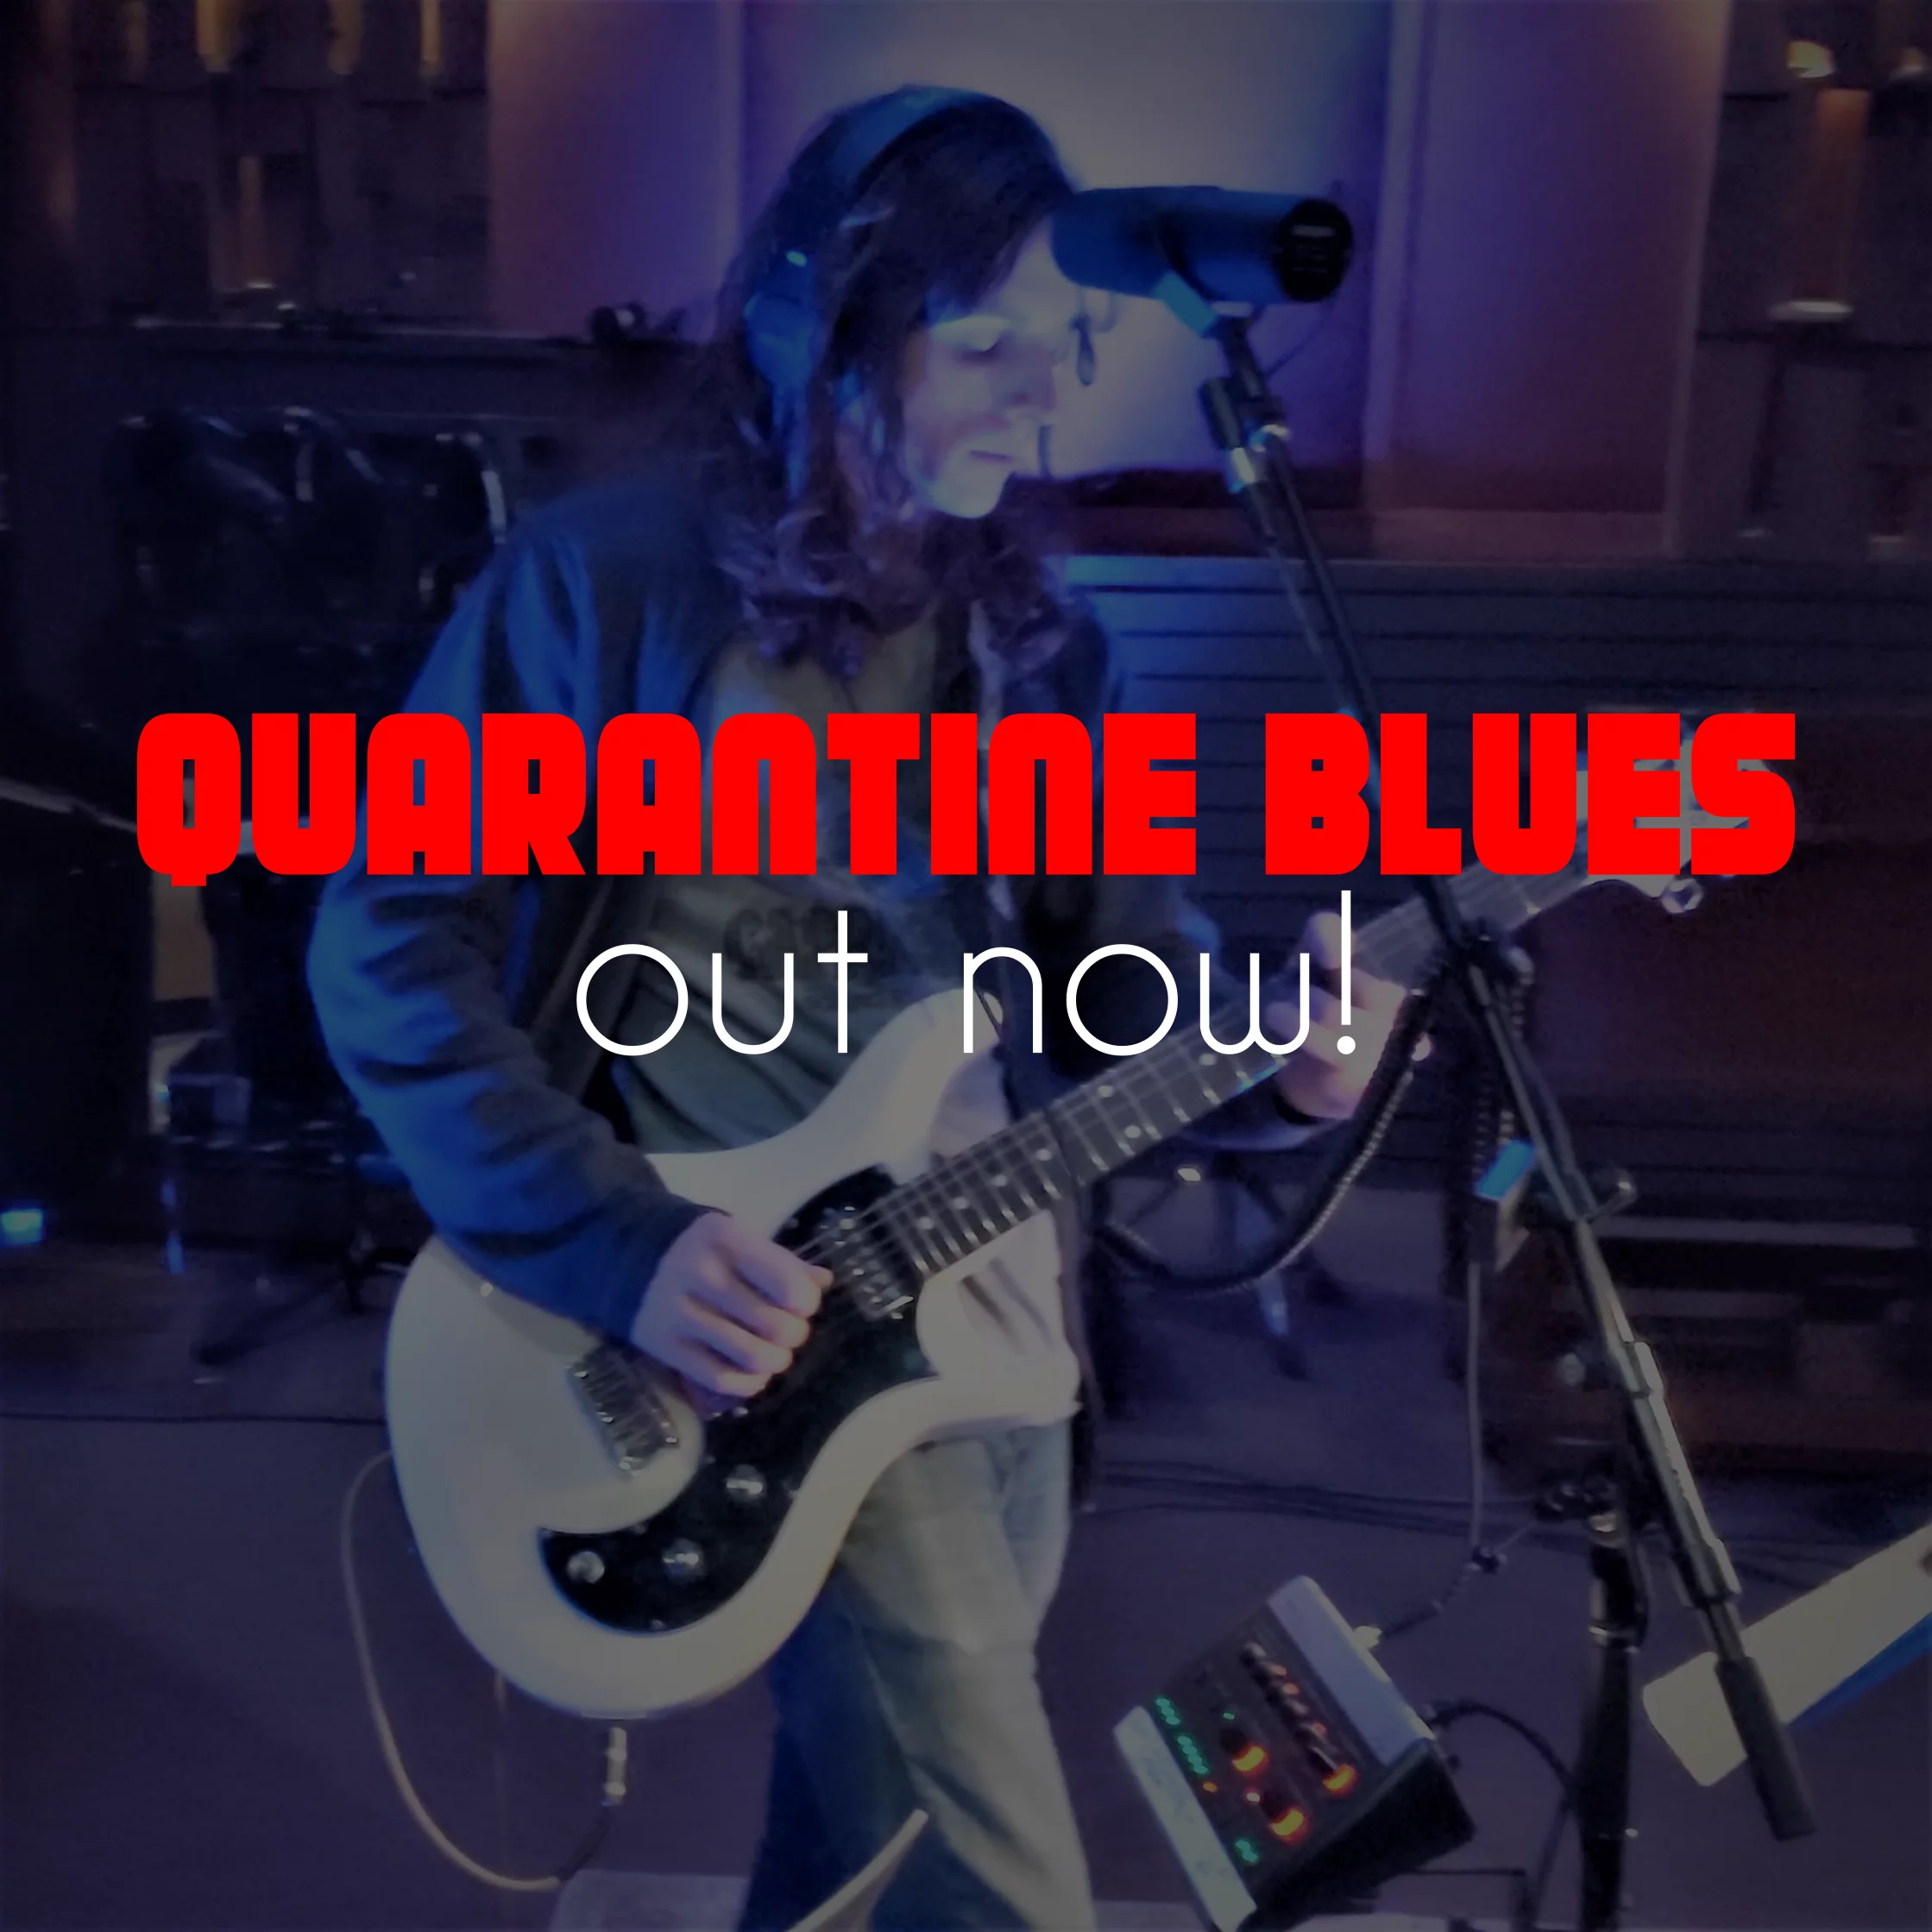 Quarantine Blues out now!